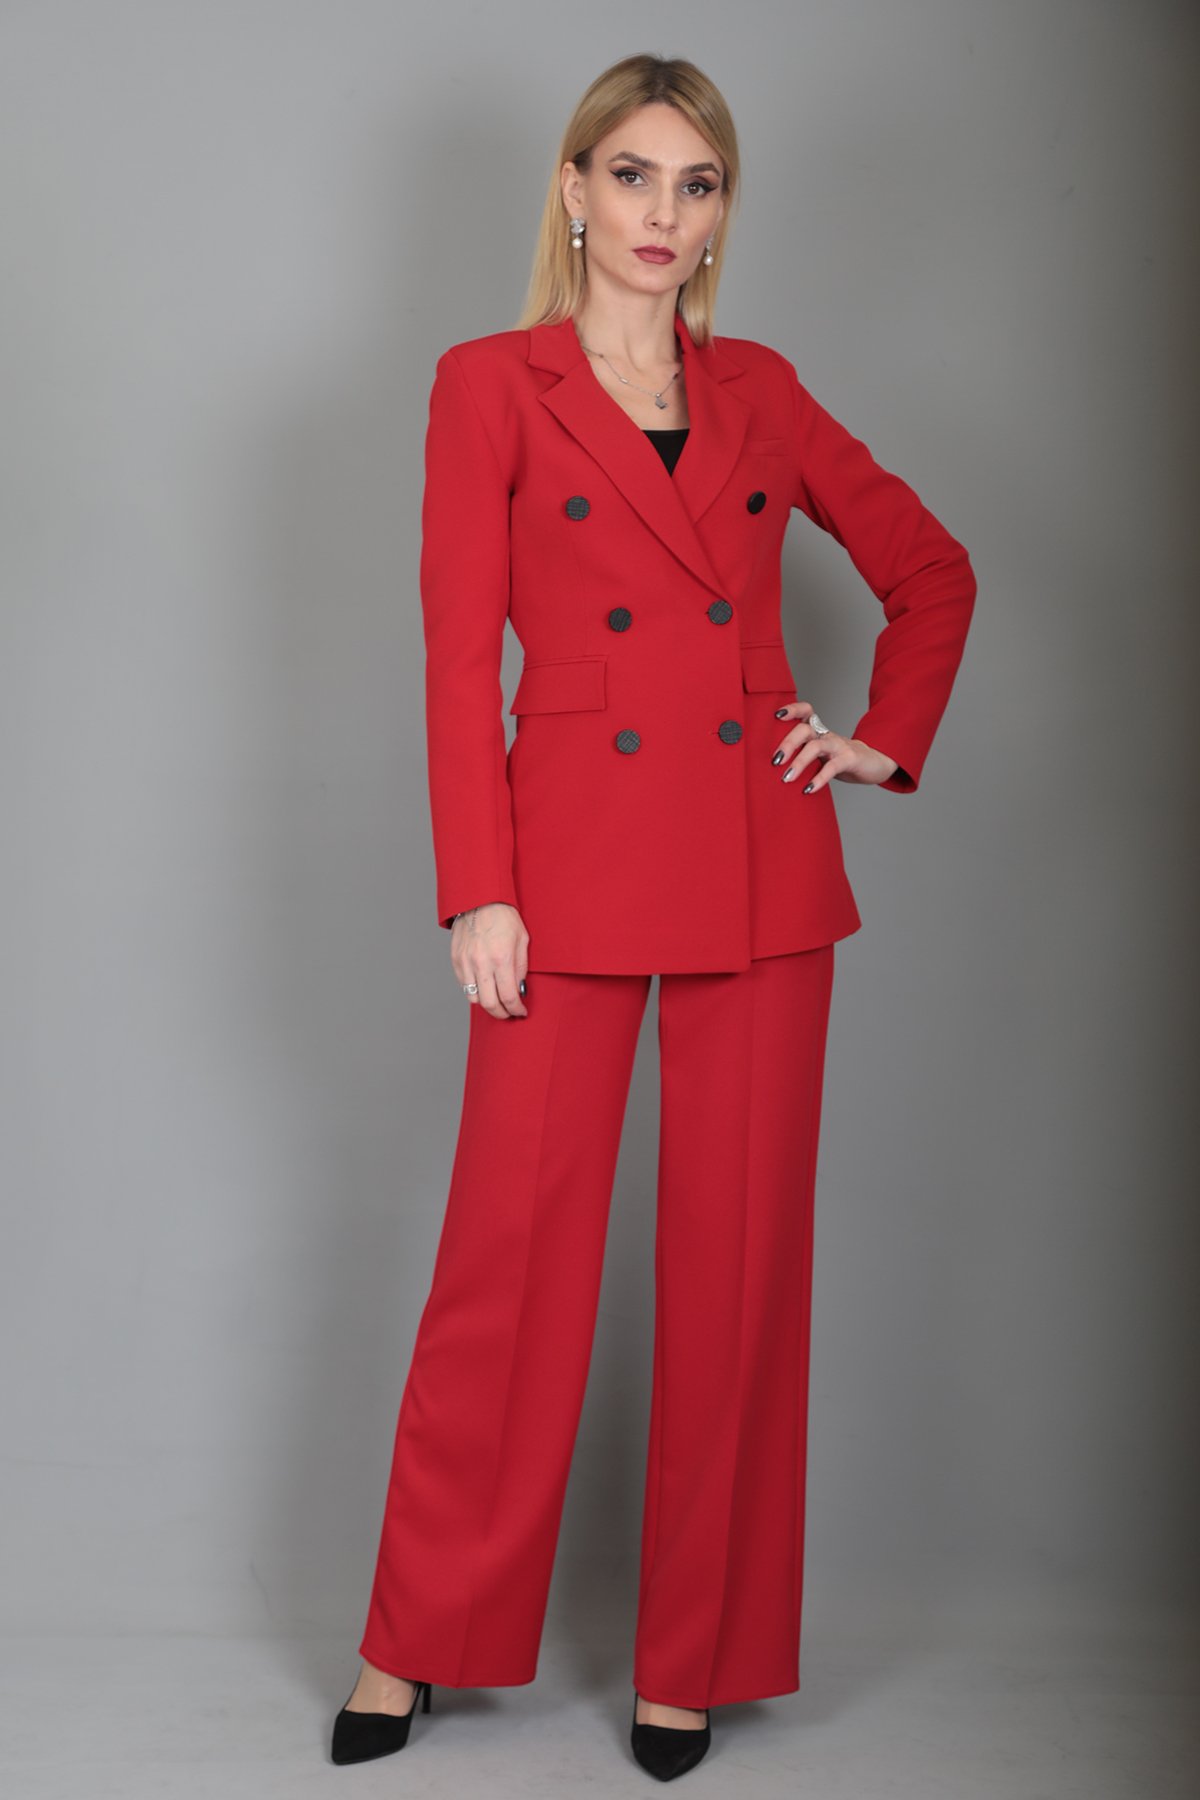 Blazer Ceket & Bol Paça Pantolon Takım-Kırmızı - Önder Özsoy | Ofis Giyim |  Yeni Sezon